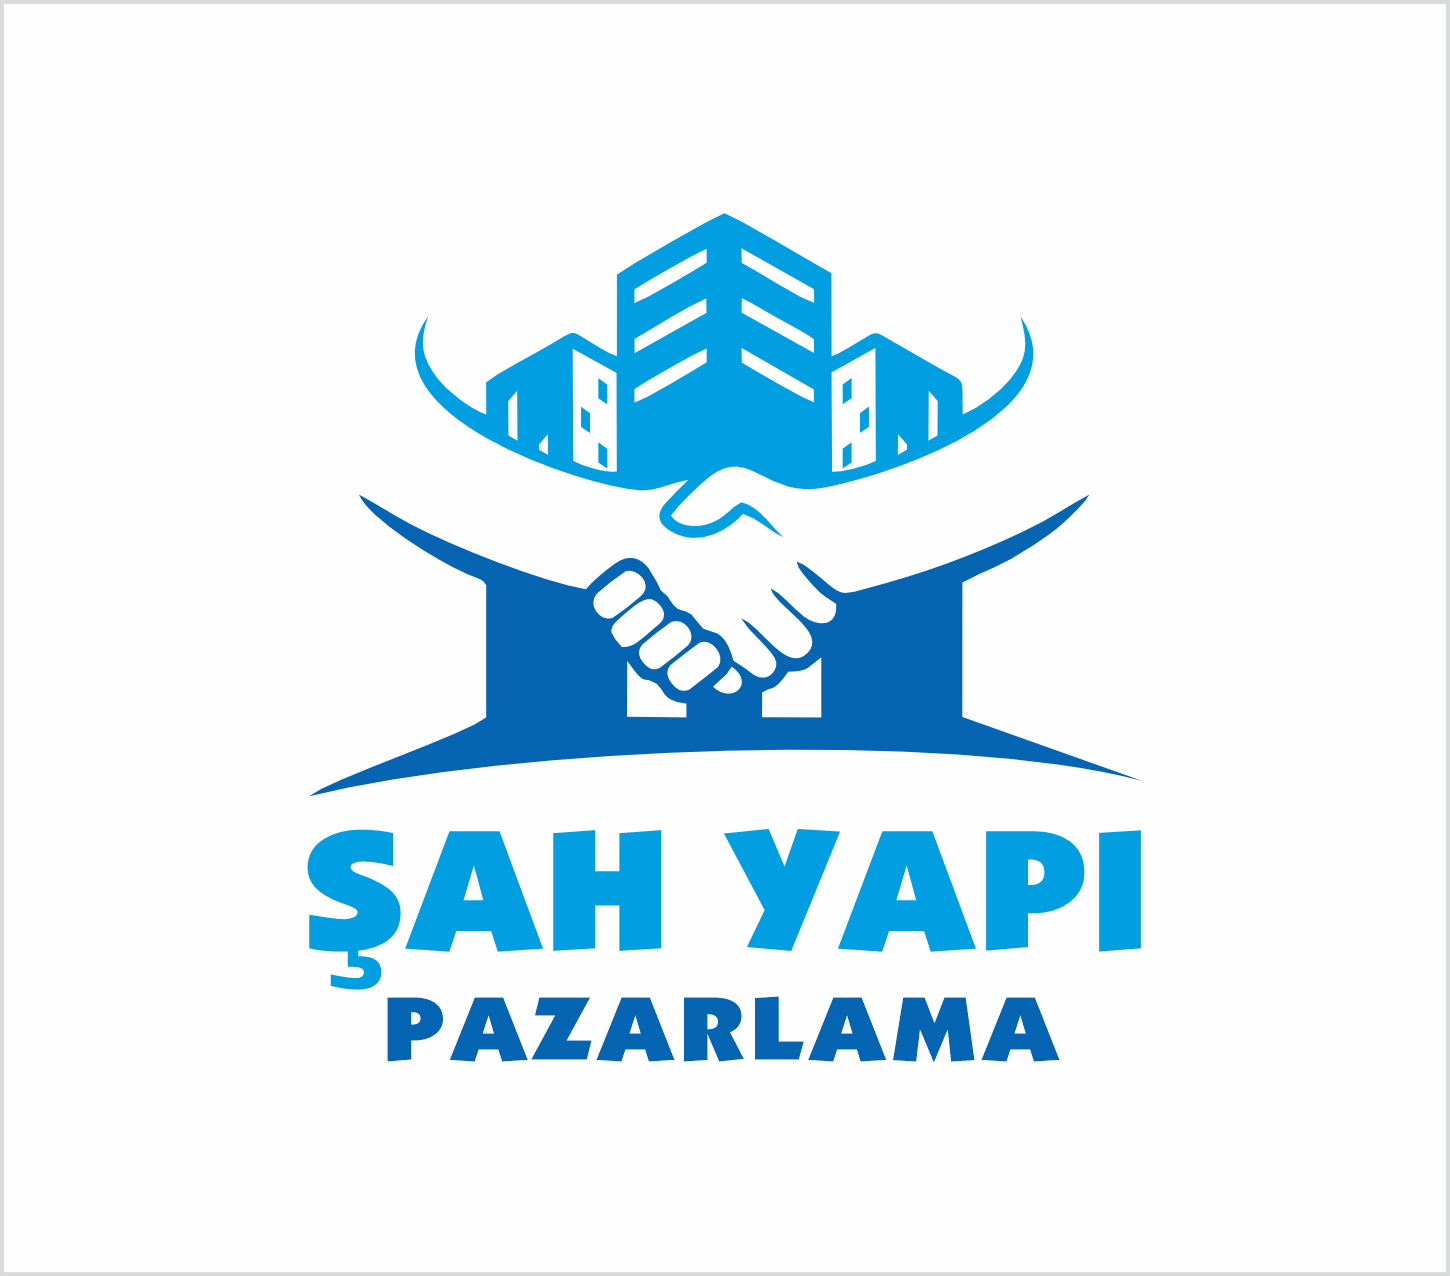 sah-yapi-pazarlama-adiyaman-logo-2